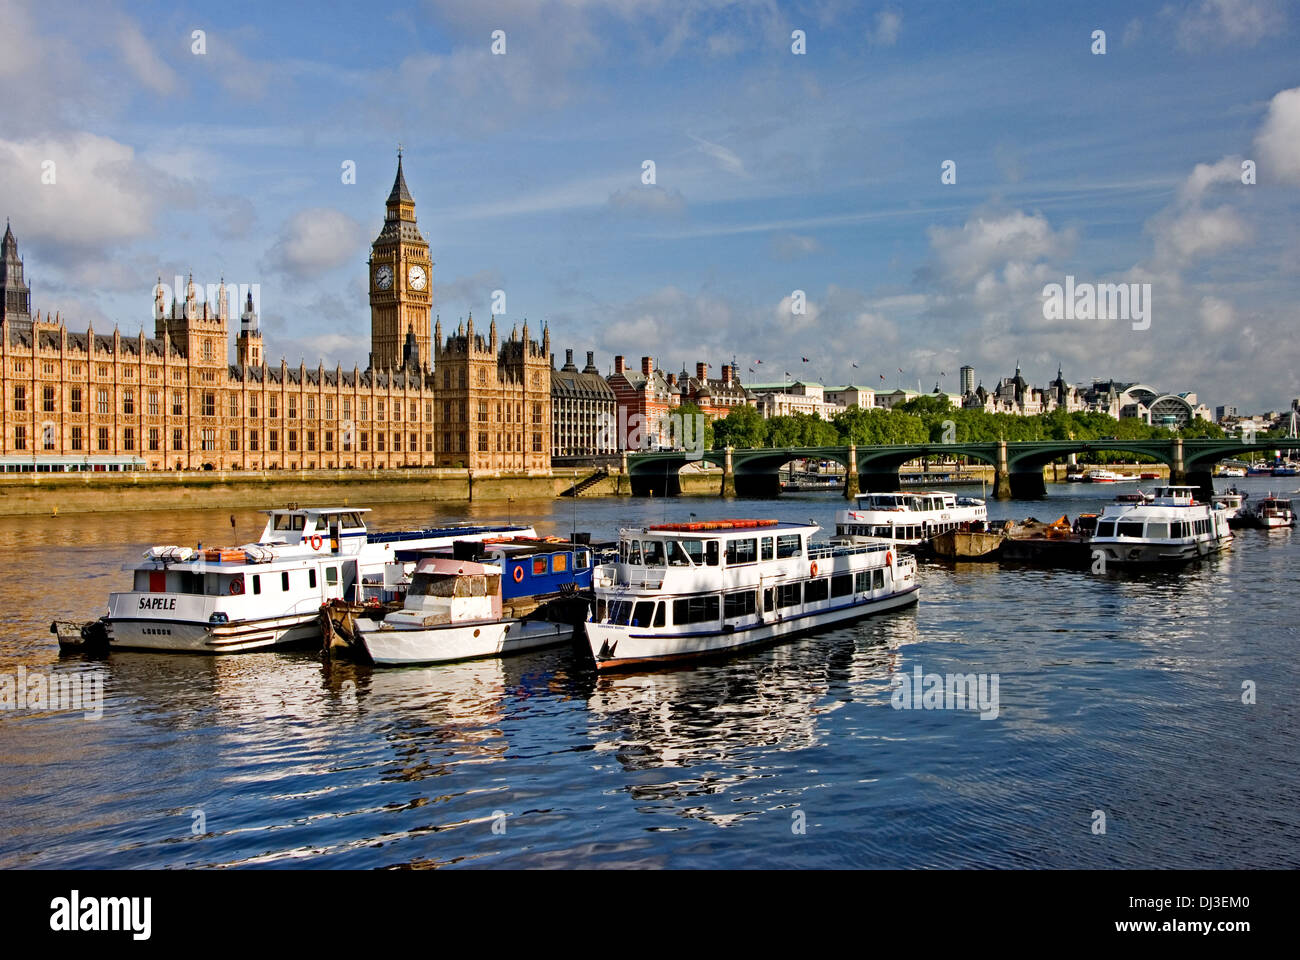 Bateaux amarrés sur la Tamise à l'extérieur du Parlement, Westminster au centre de Londres, avec Big Ben en arrière-plan. Banque D'Images